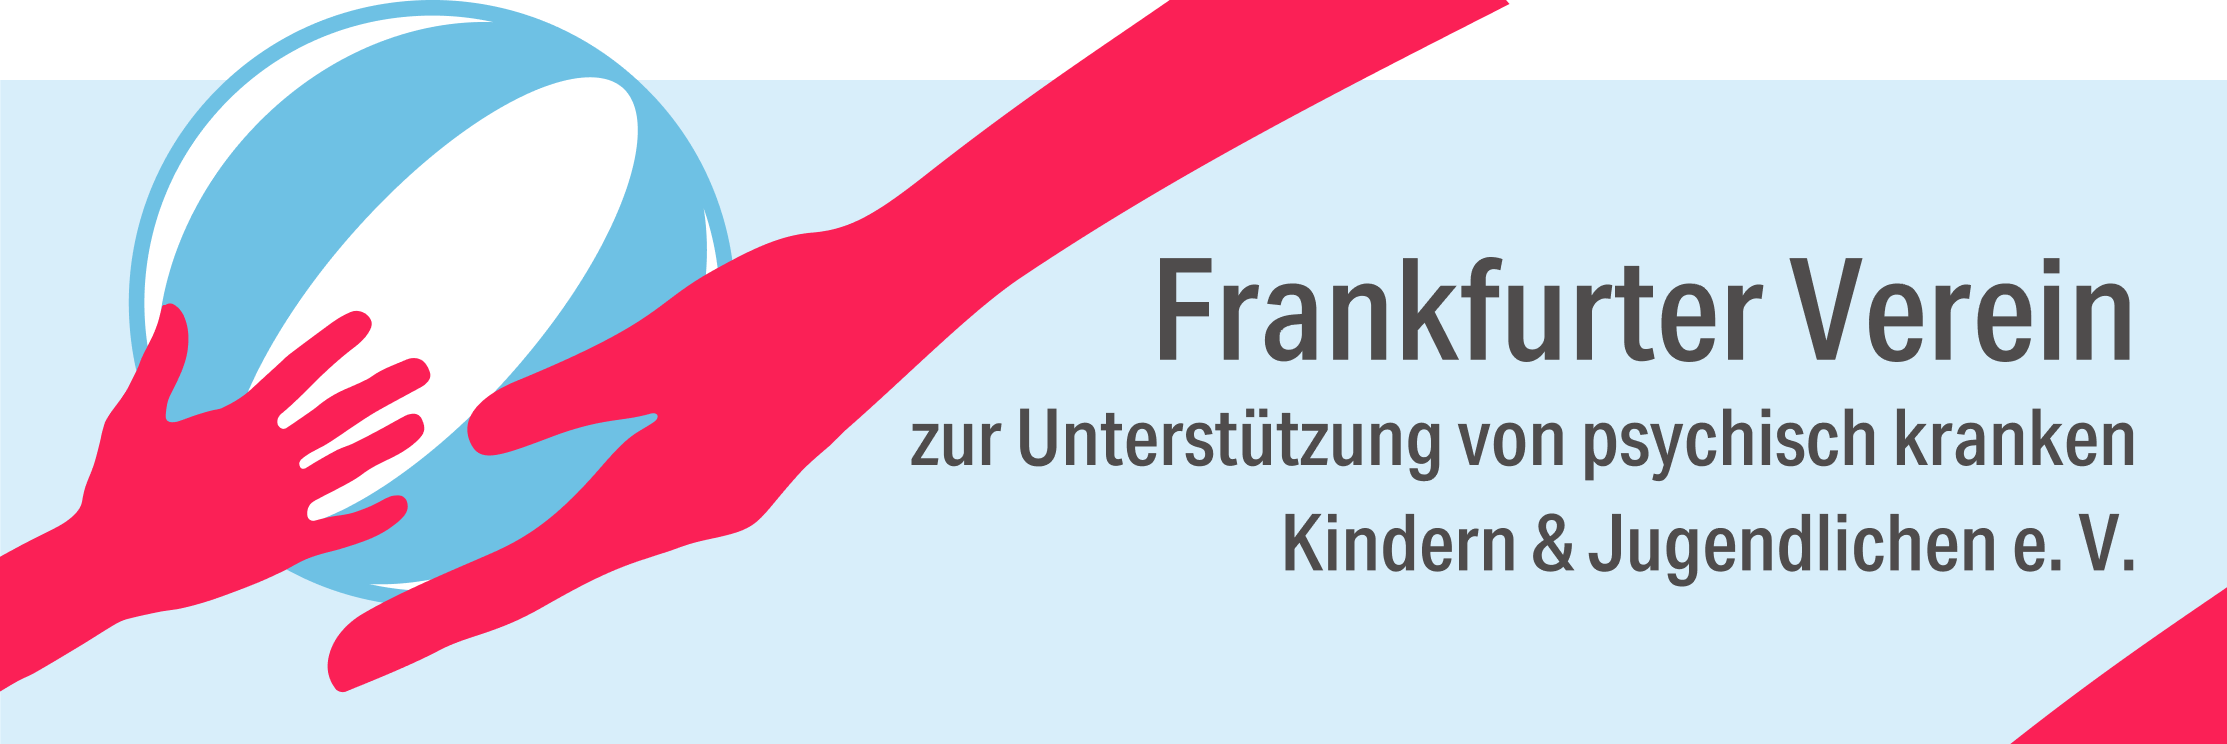 Frankfurter Verein zur Unterstützung von psychisch kranken Kindern und Jugendlichen e.V.